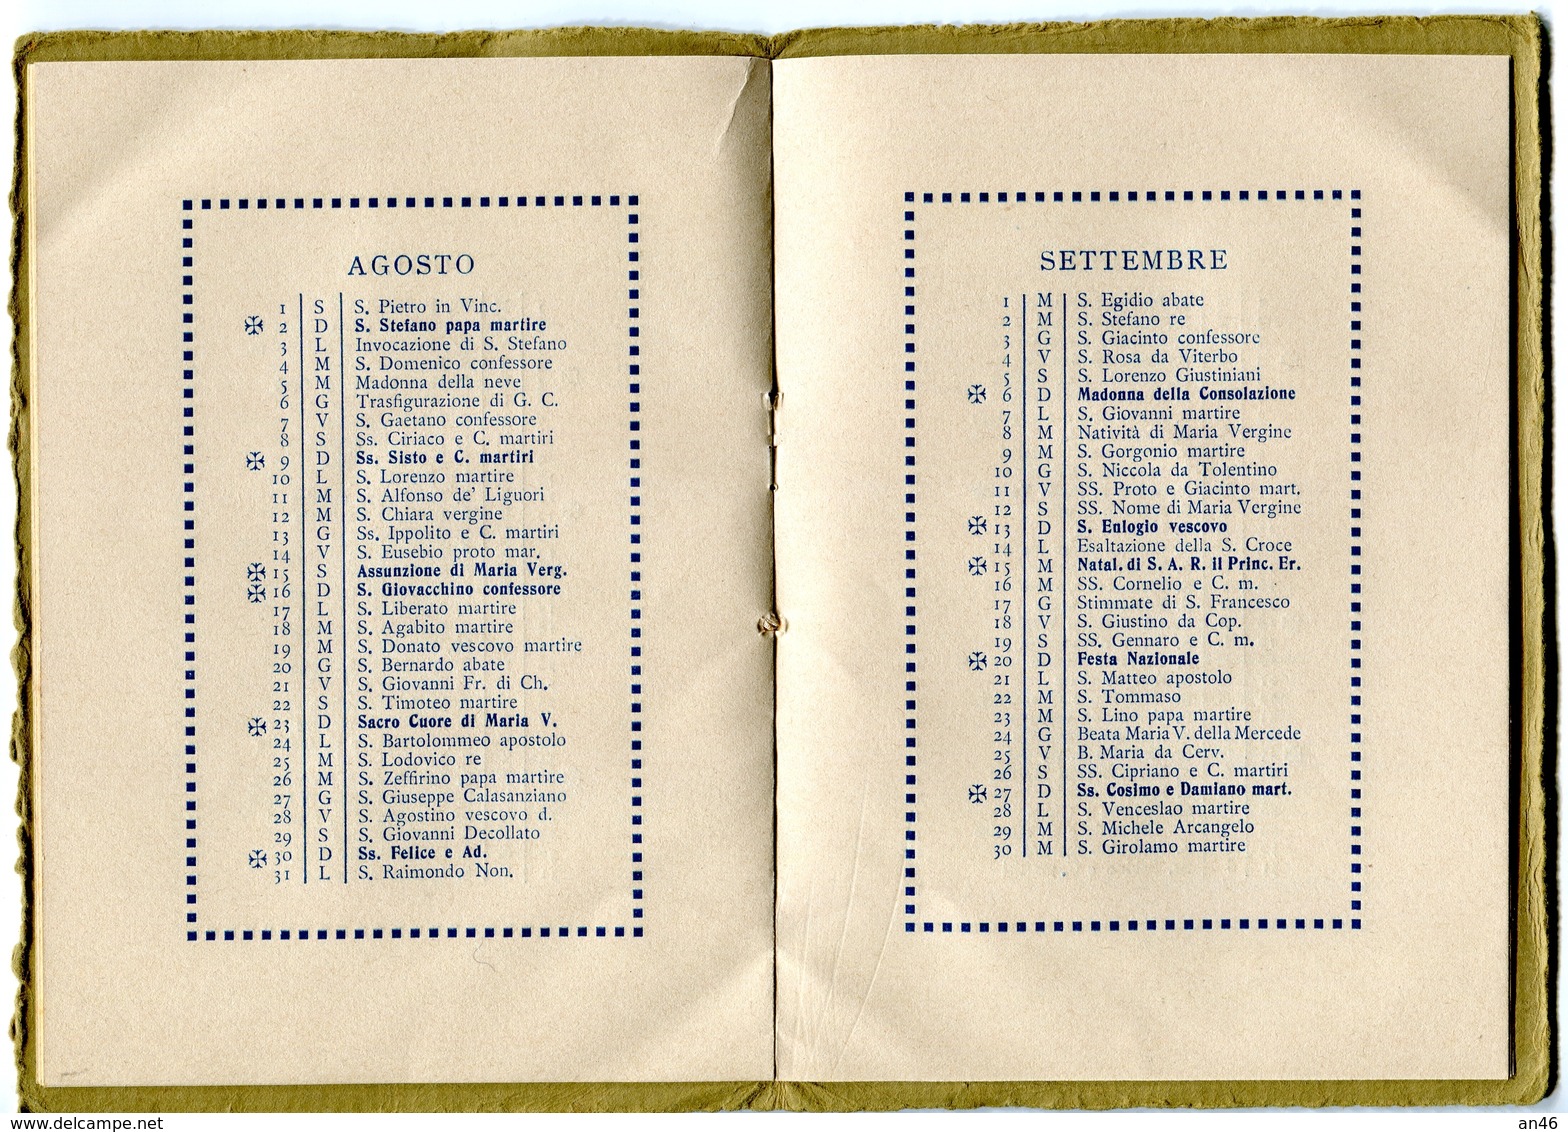 Calendario-Calendarietto-Calendrier-Kalender-Calendar-"Regia Accademia Navale 1914" Integra e Originale 100%